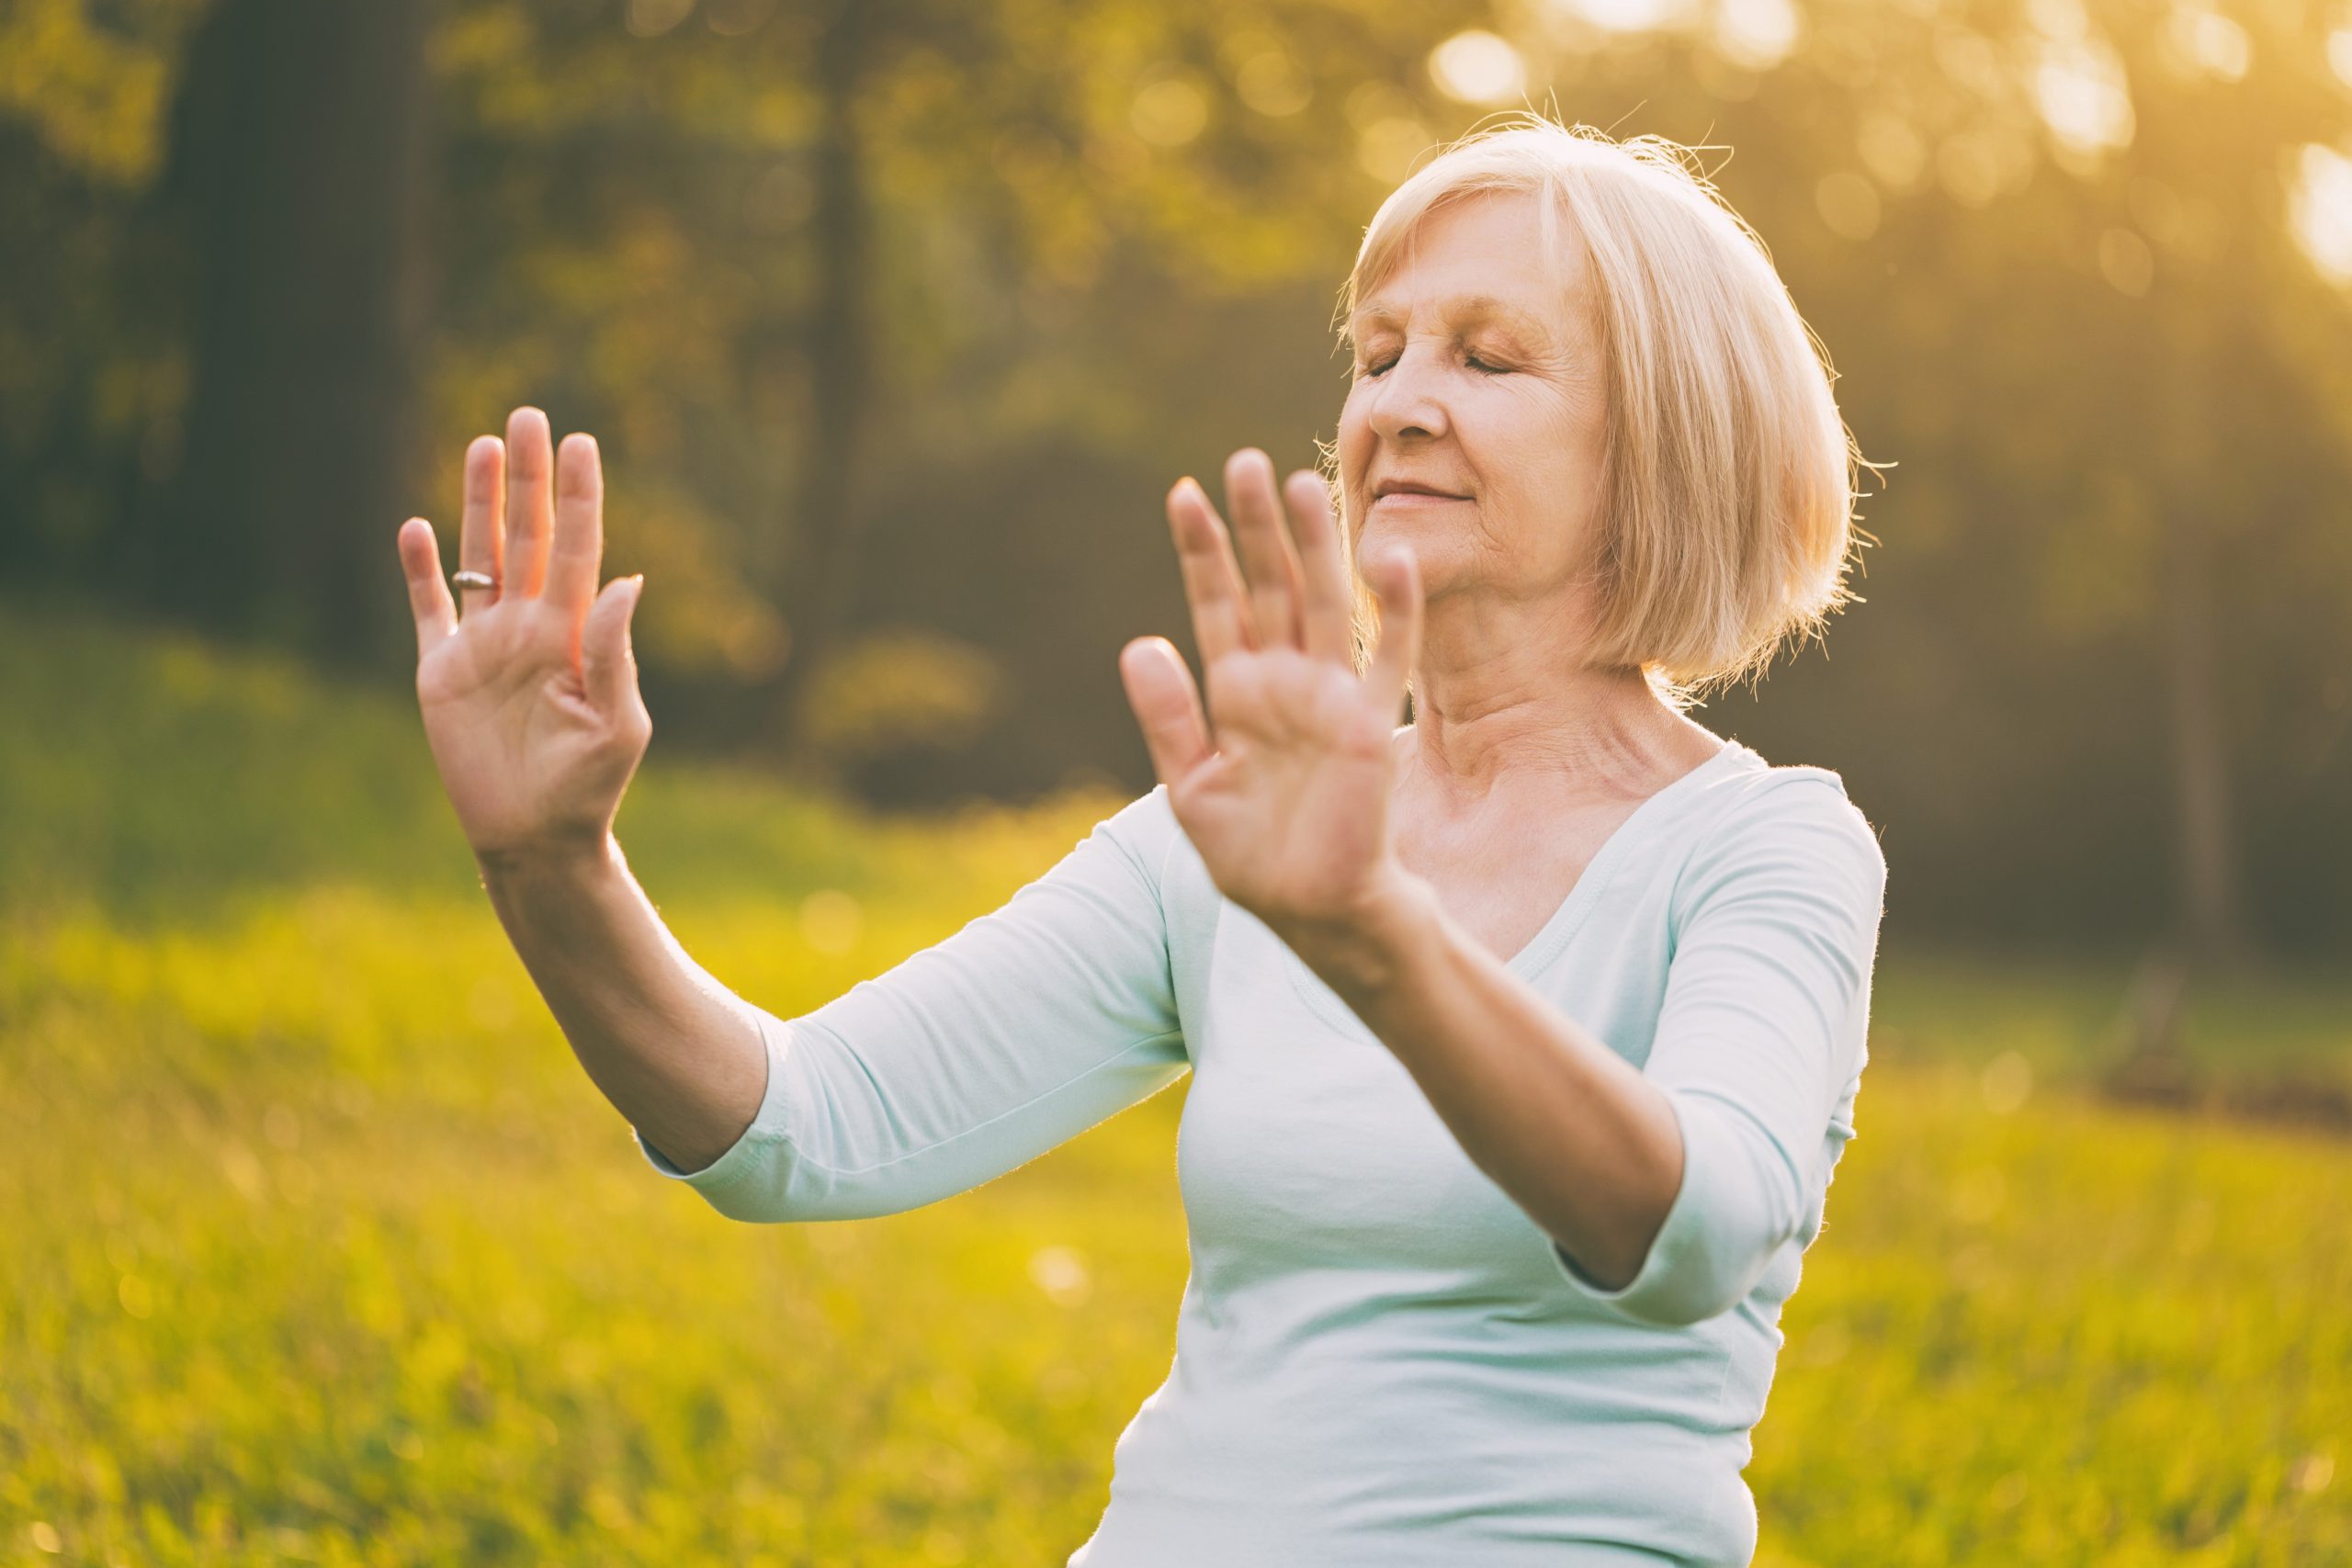 Le yoga et le tai chi ont non seulement des effets antistress et anti-anxiété, ils réduisent aussi les risques de chute de 40% chez les aînés